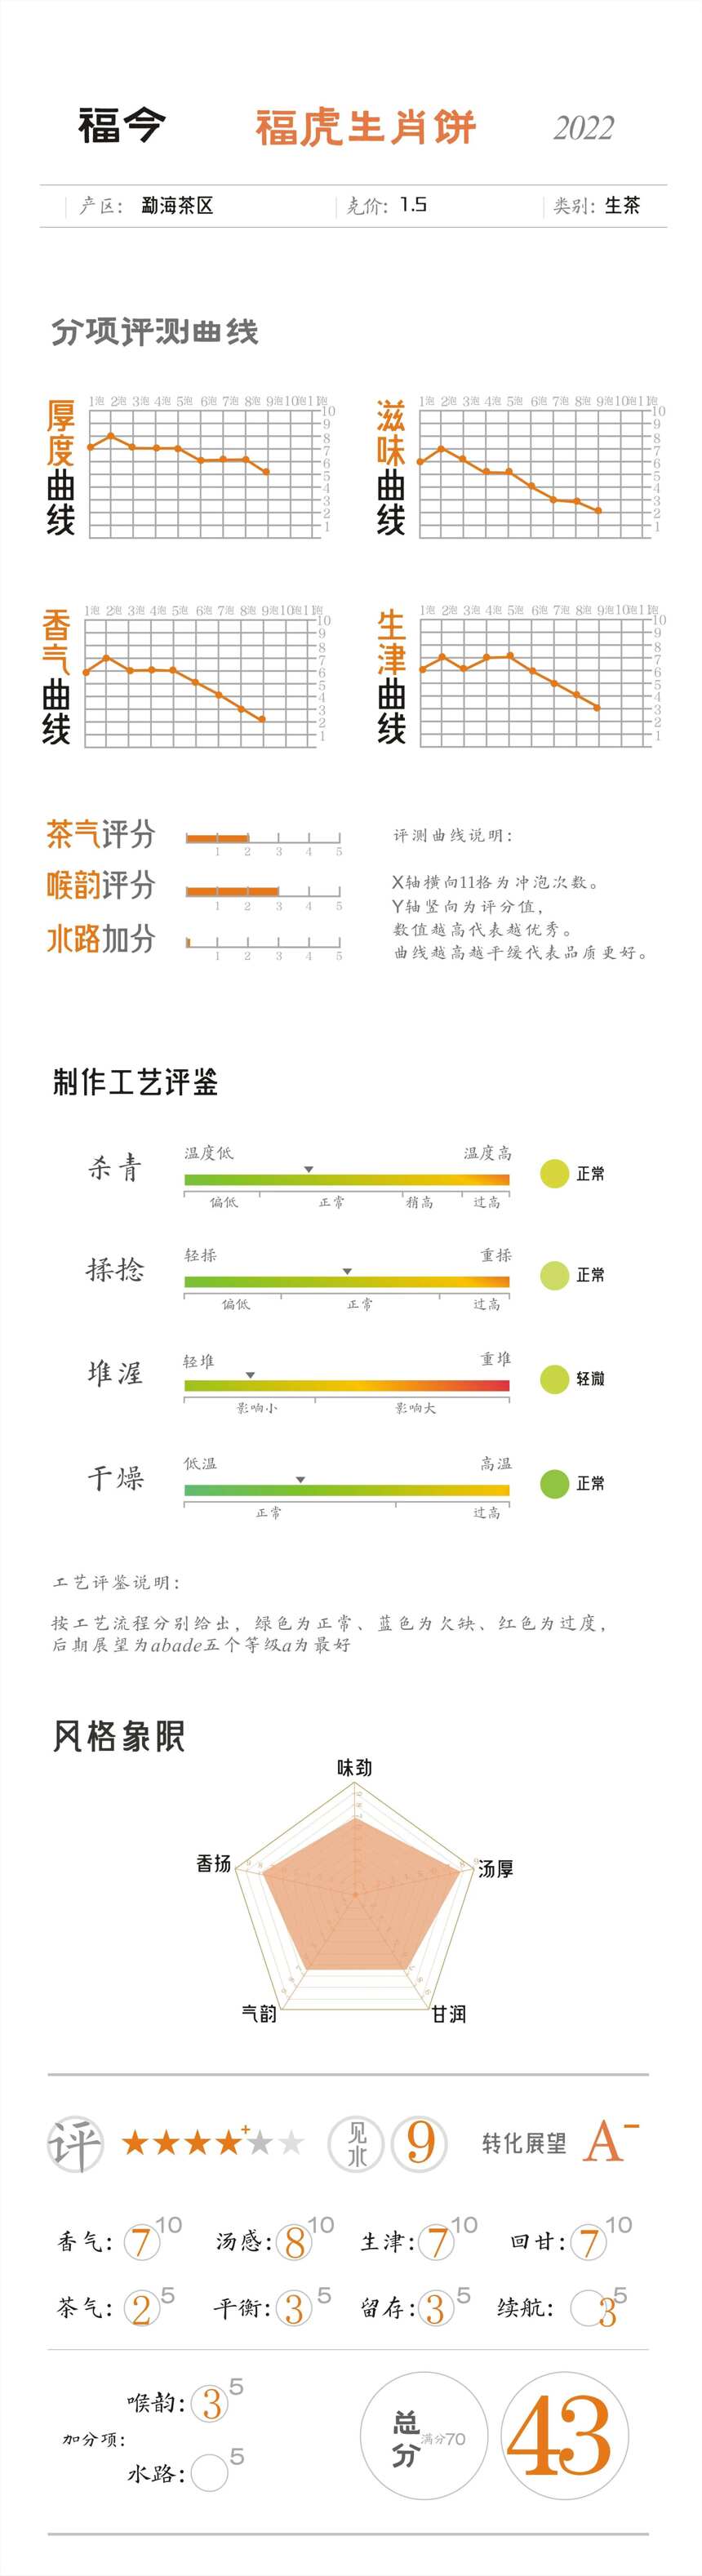 近三年定价最低的福今生肖饼，福今2022福虎生肖饼评测，有惊喜吗